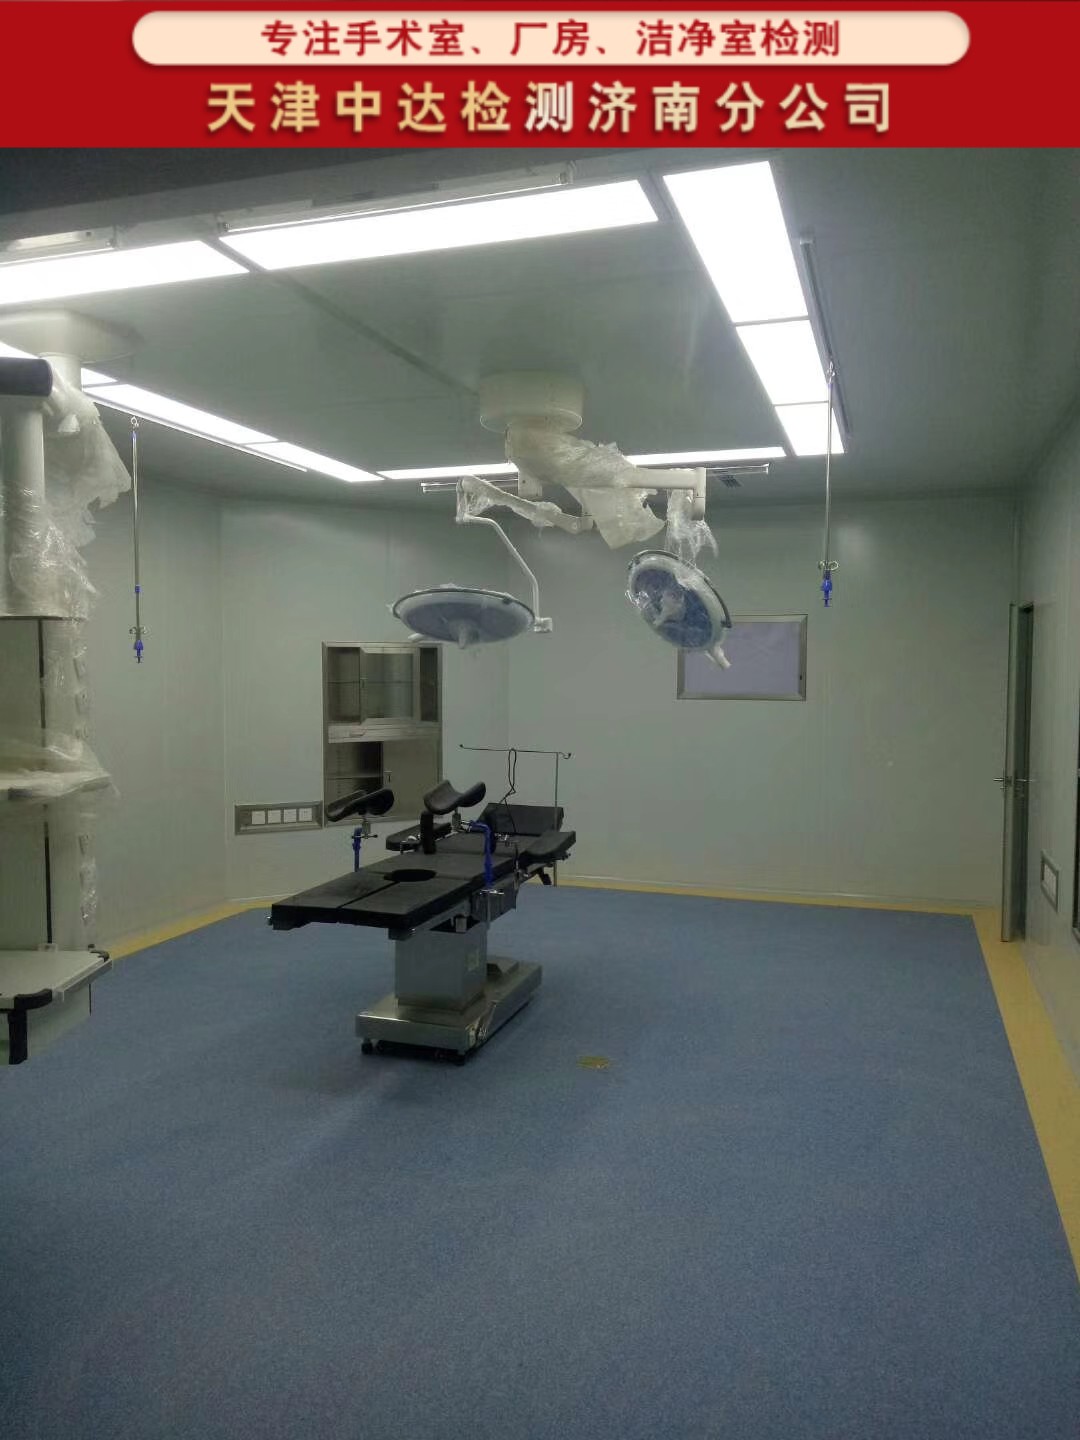 日照五莲县医院手术室洁净及细菌检测中心-天津中达检测济南分公司